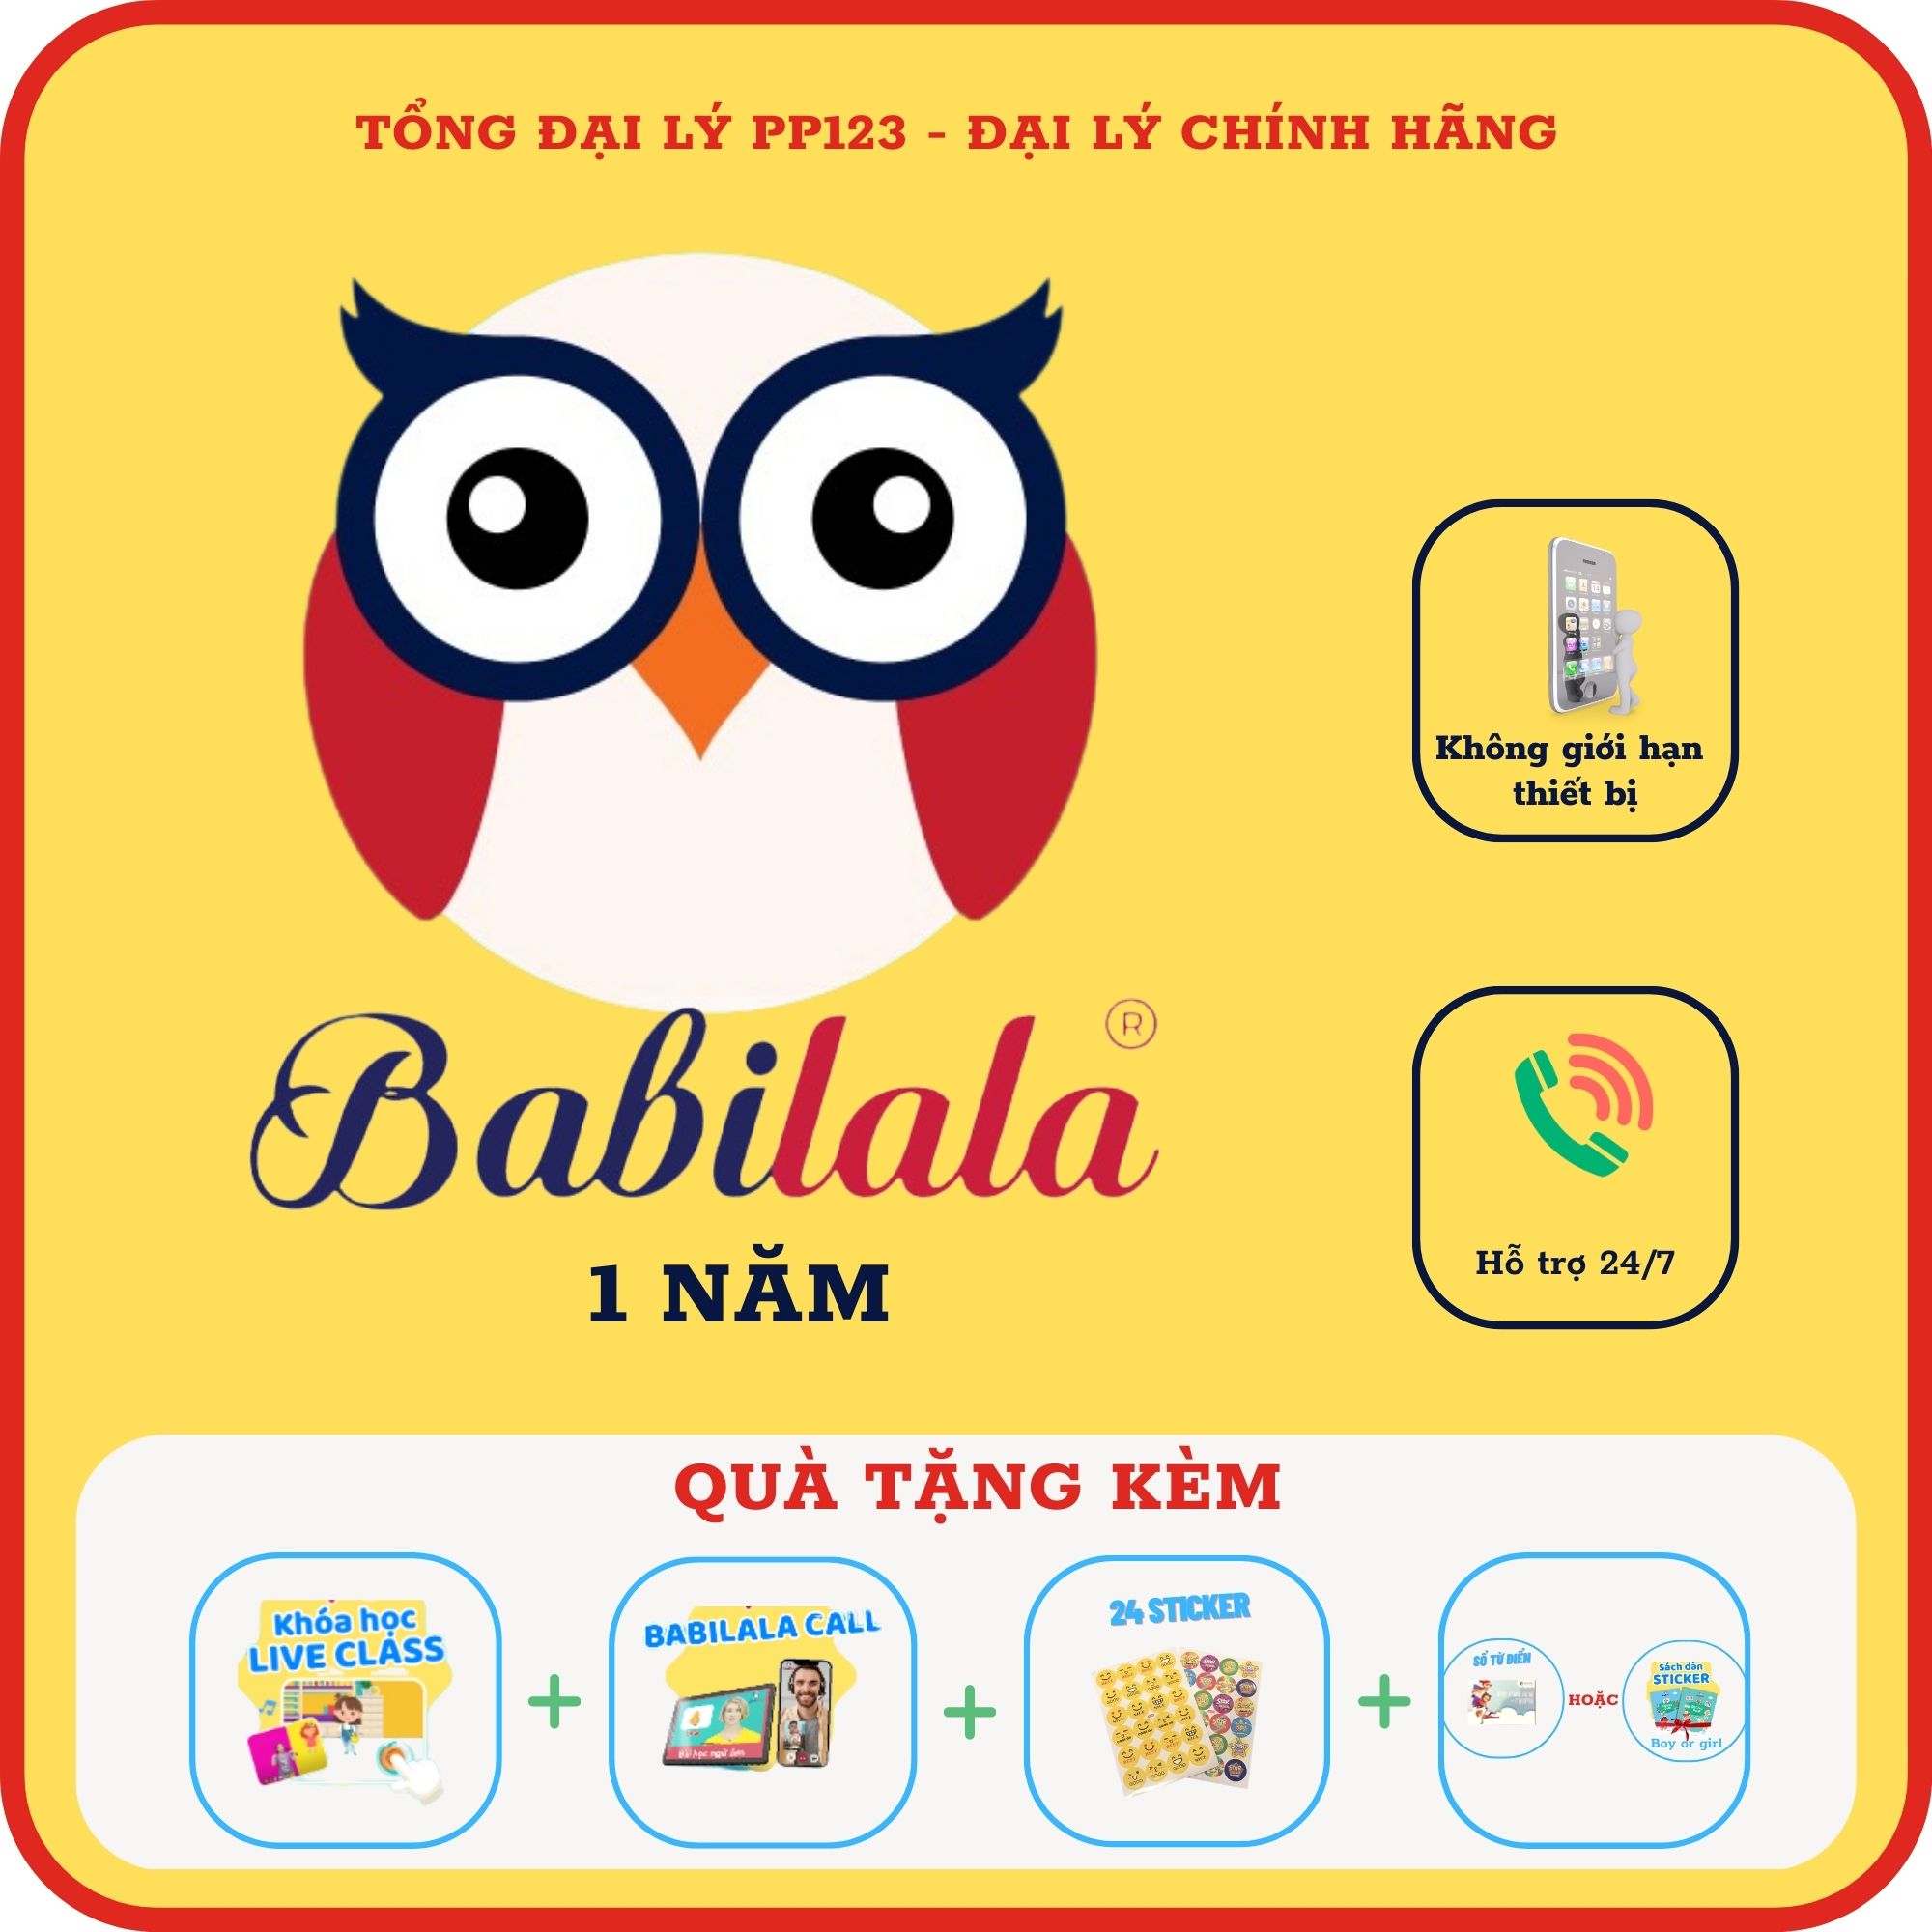 Babilala 1 năm (Tặng thêm 3 tháng)  - Tiếng Anh online chất lượng cao cho trẻ từ 3-8 tuổi